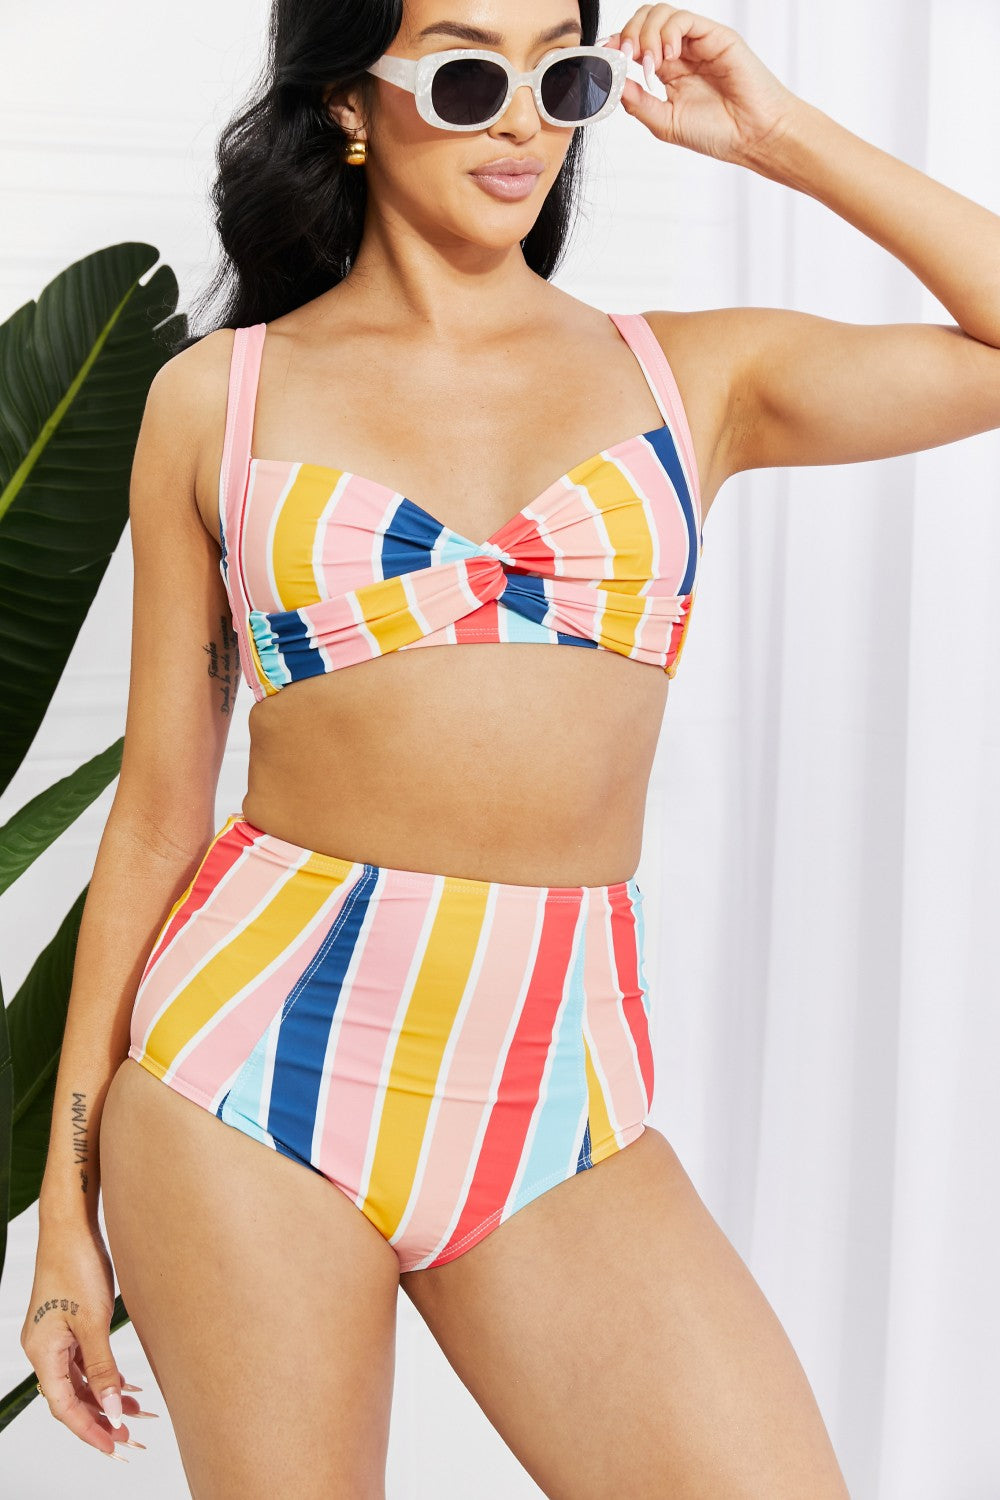 Marina West Swim Take A Dip Twist High-Rise Bikini in Stripe - Sun of the Beach Boutique